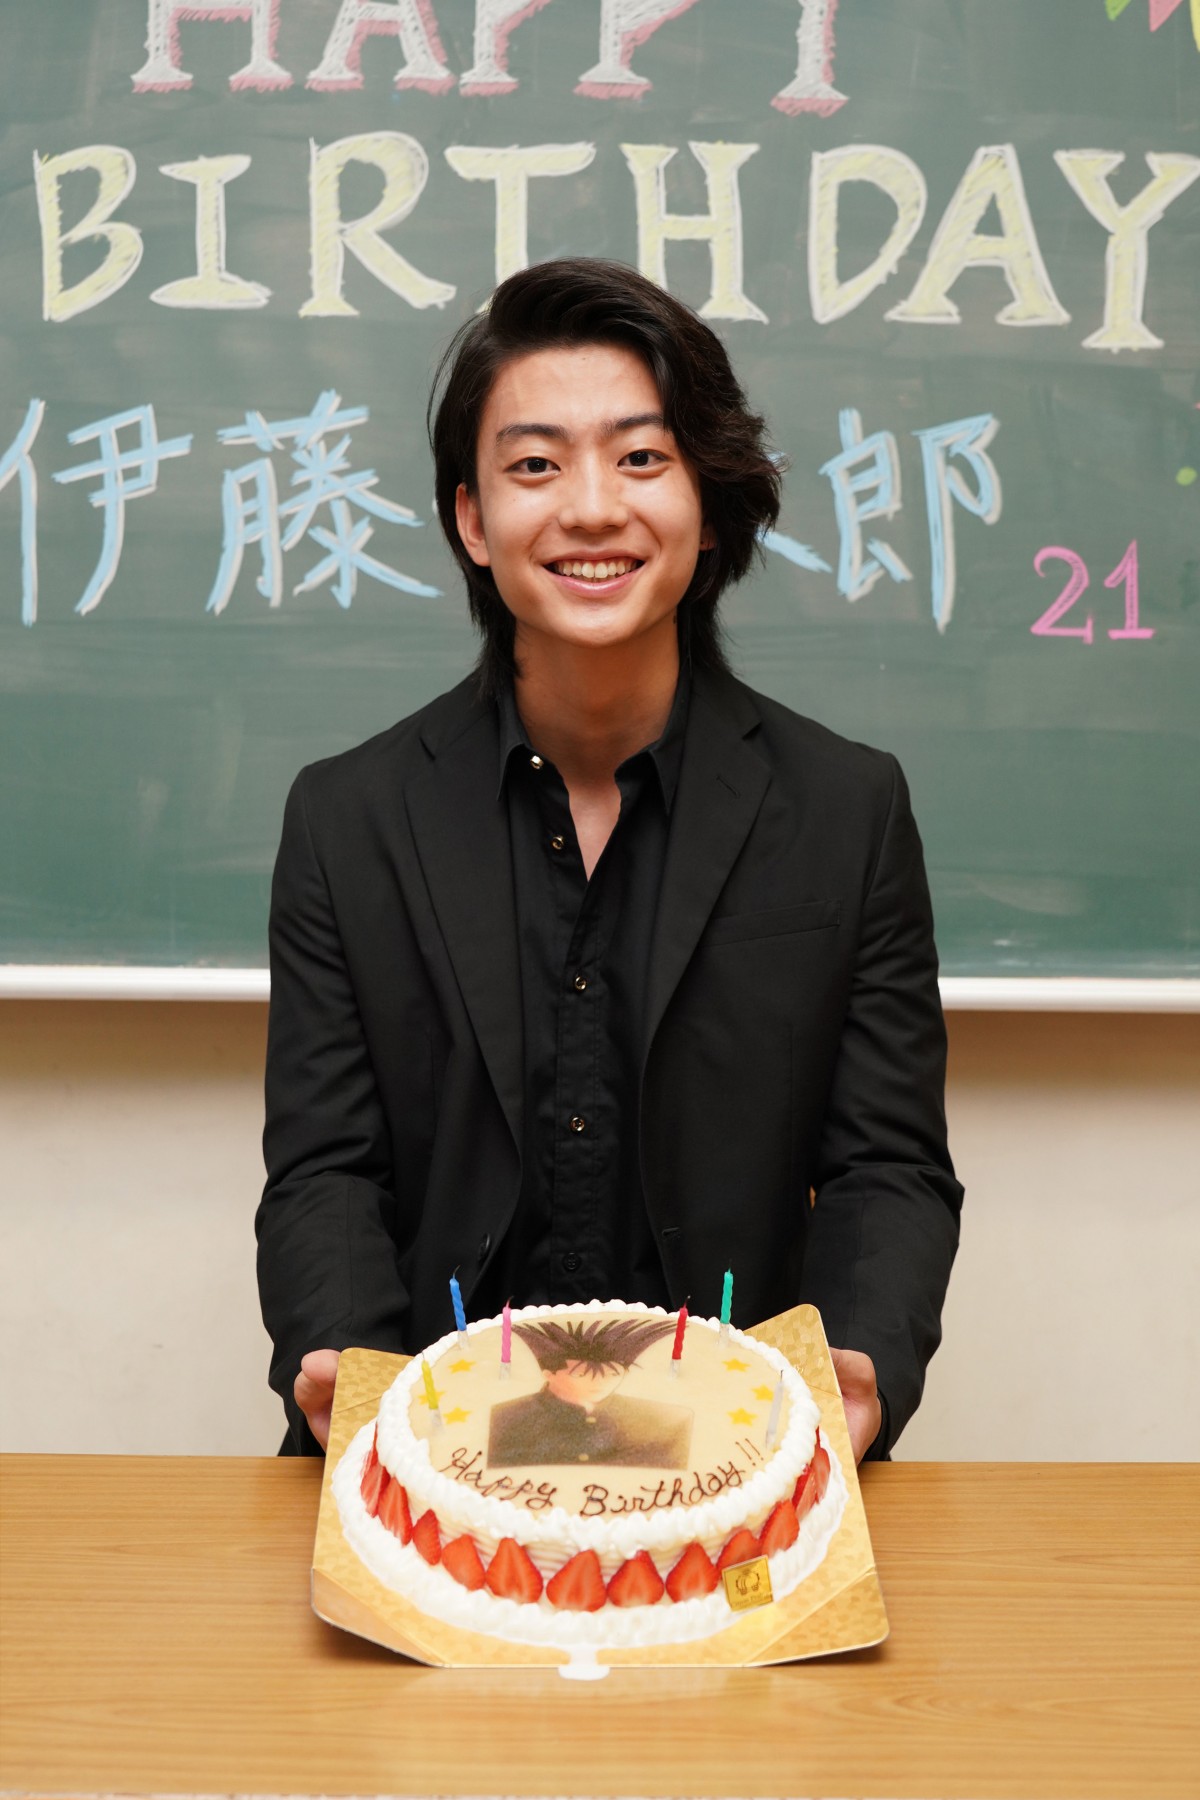 健太郎「今日から俺は、伊藤健太郎」 21歳の誕生日に改名を発表